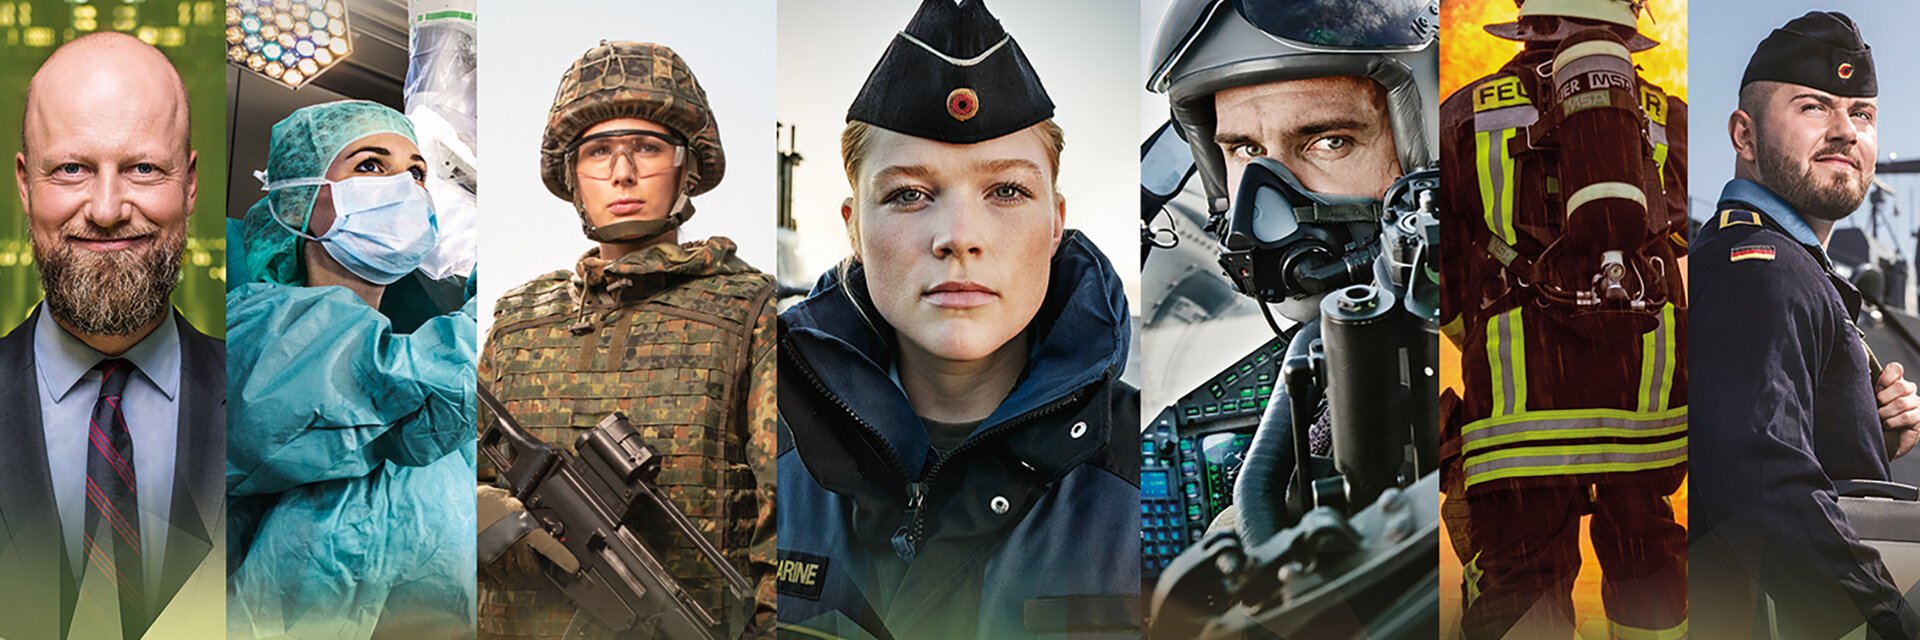 Berufe bei der Bundeswehr